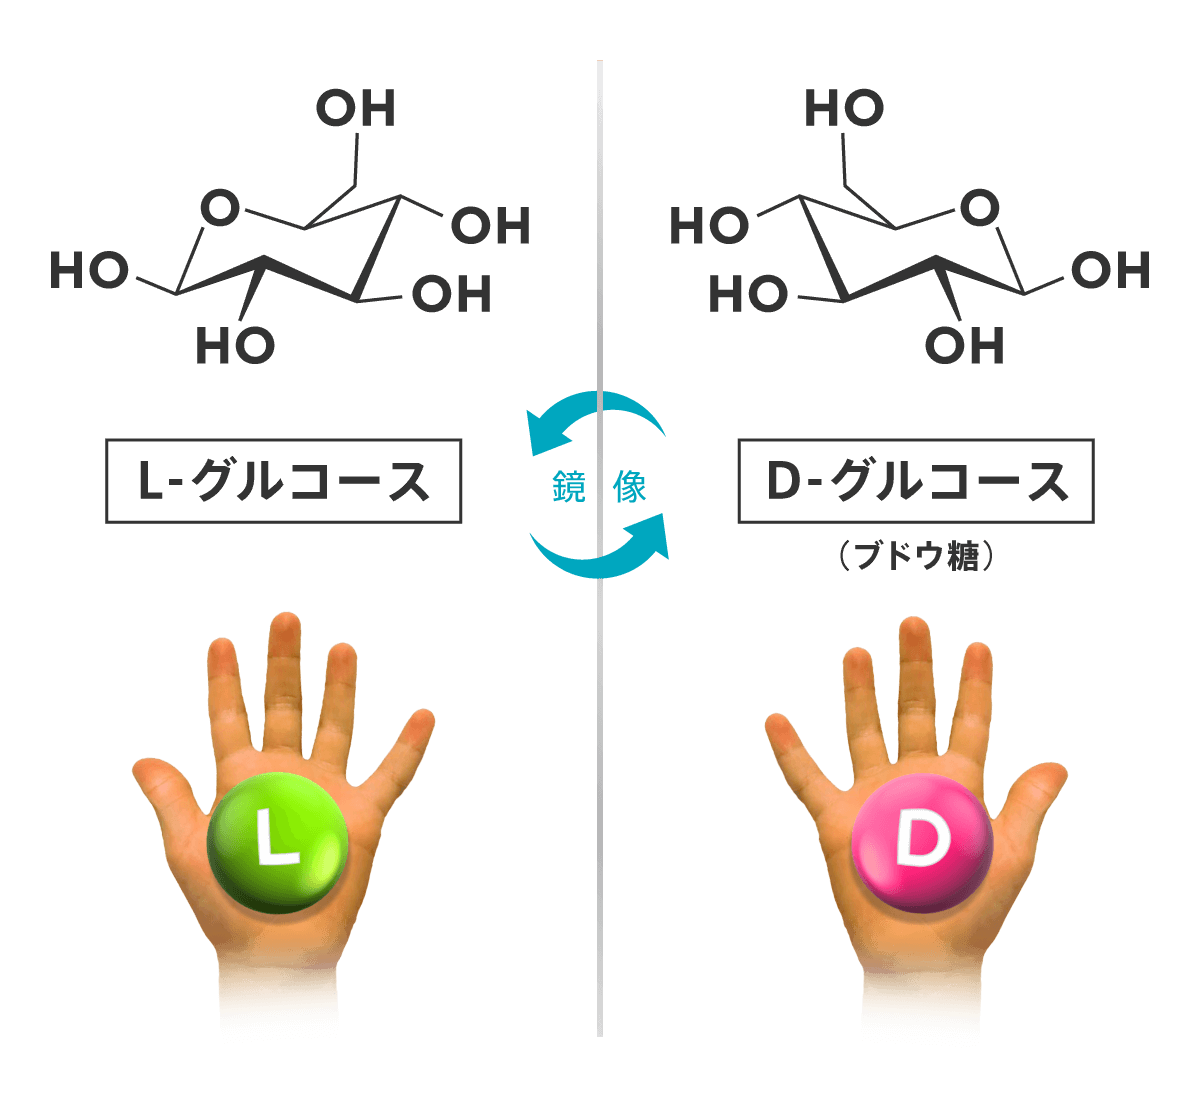 L-グルコースとD-グルコースの化学構造